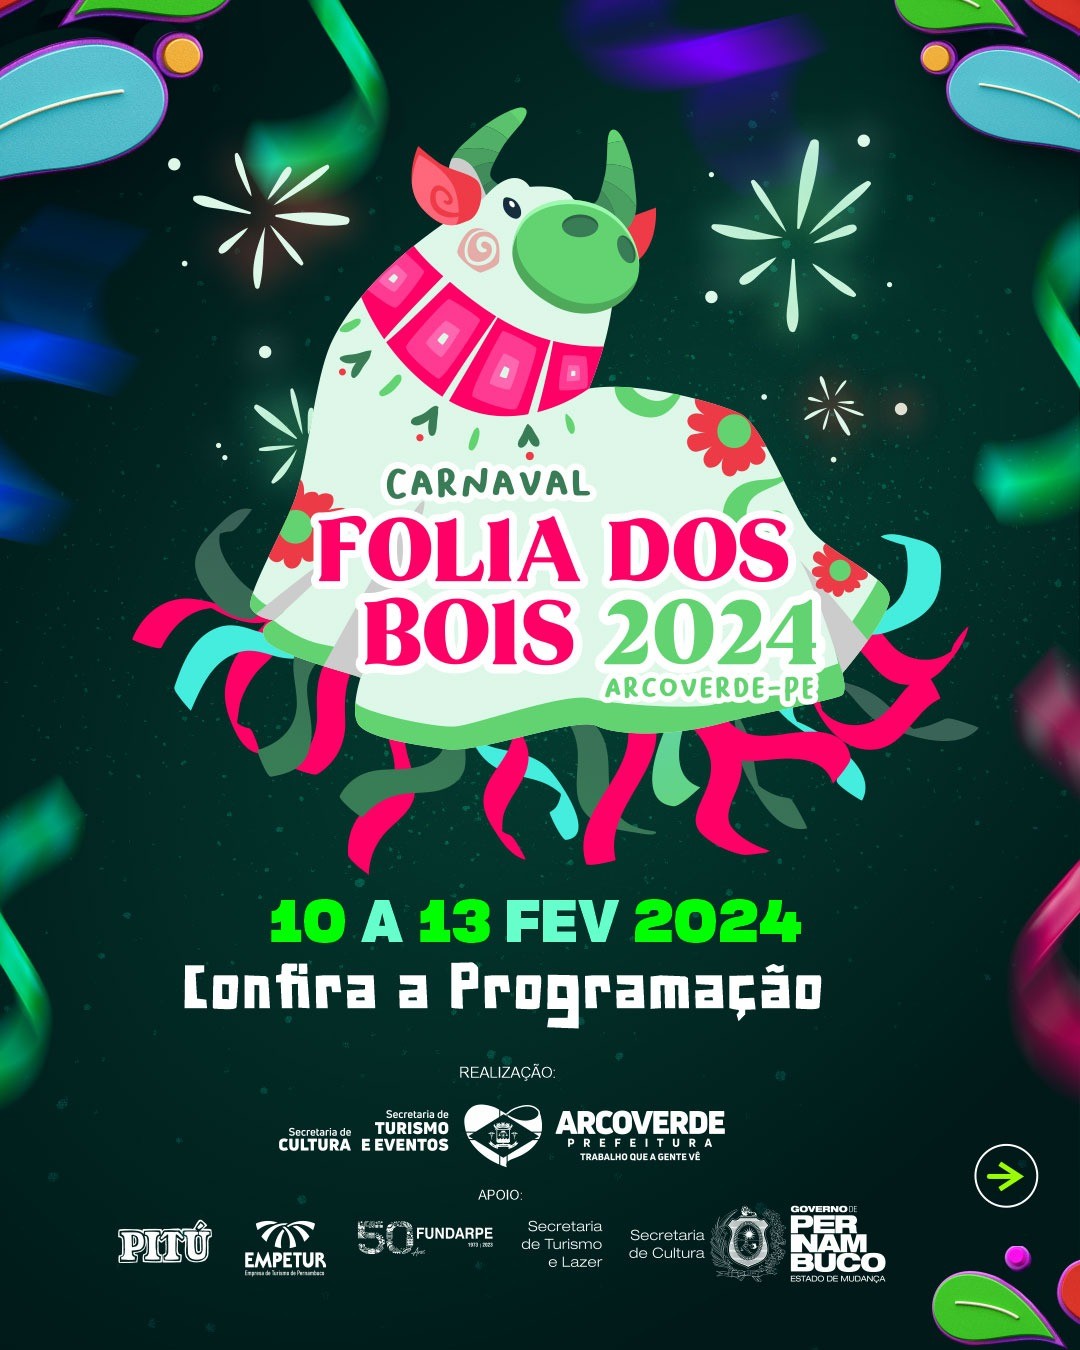 Arcoverde divulga programação do Carnaval Folia dos Bois 2024